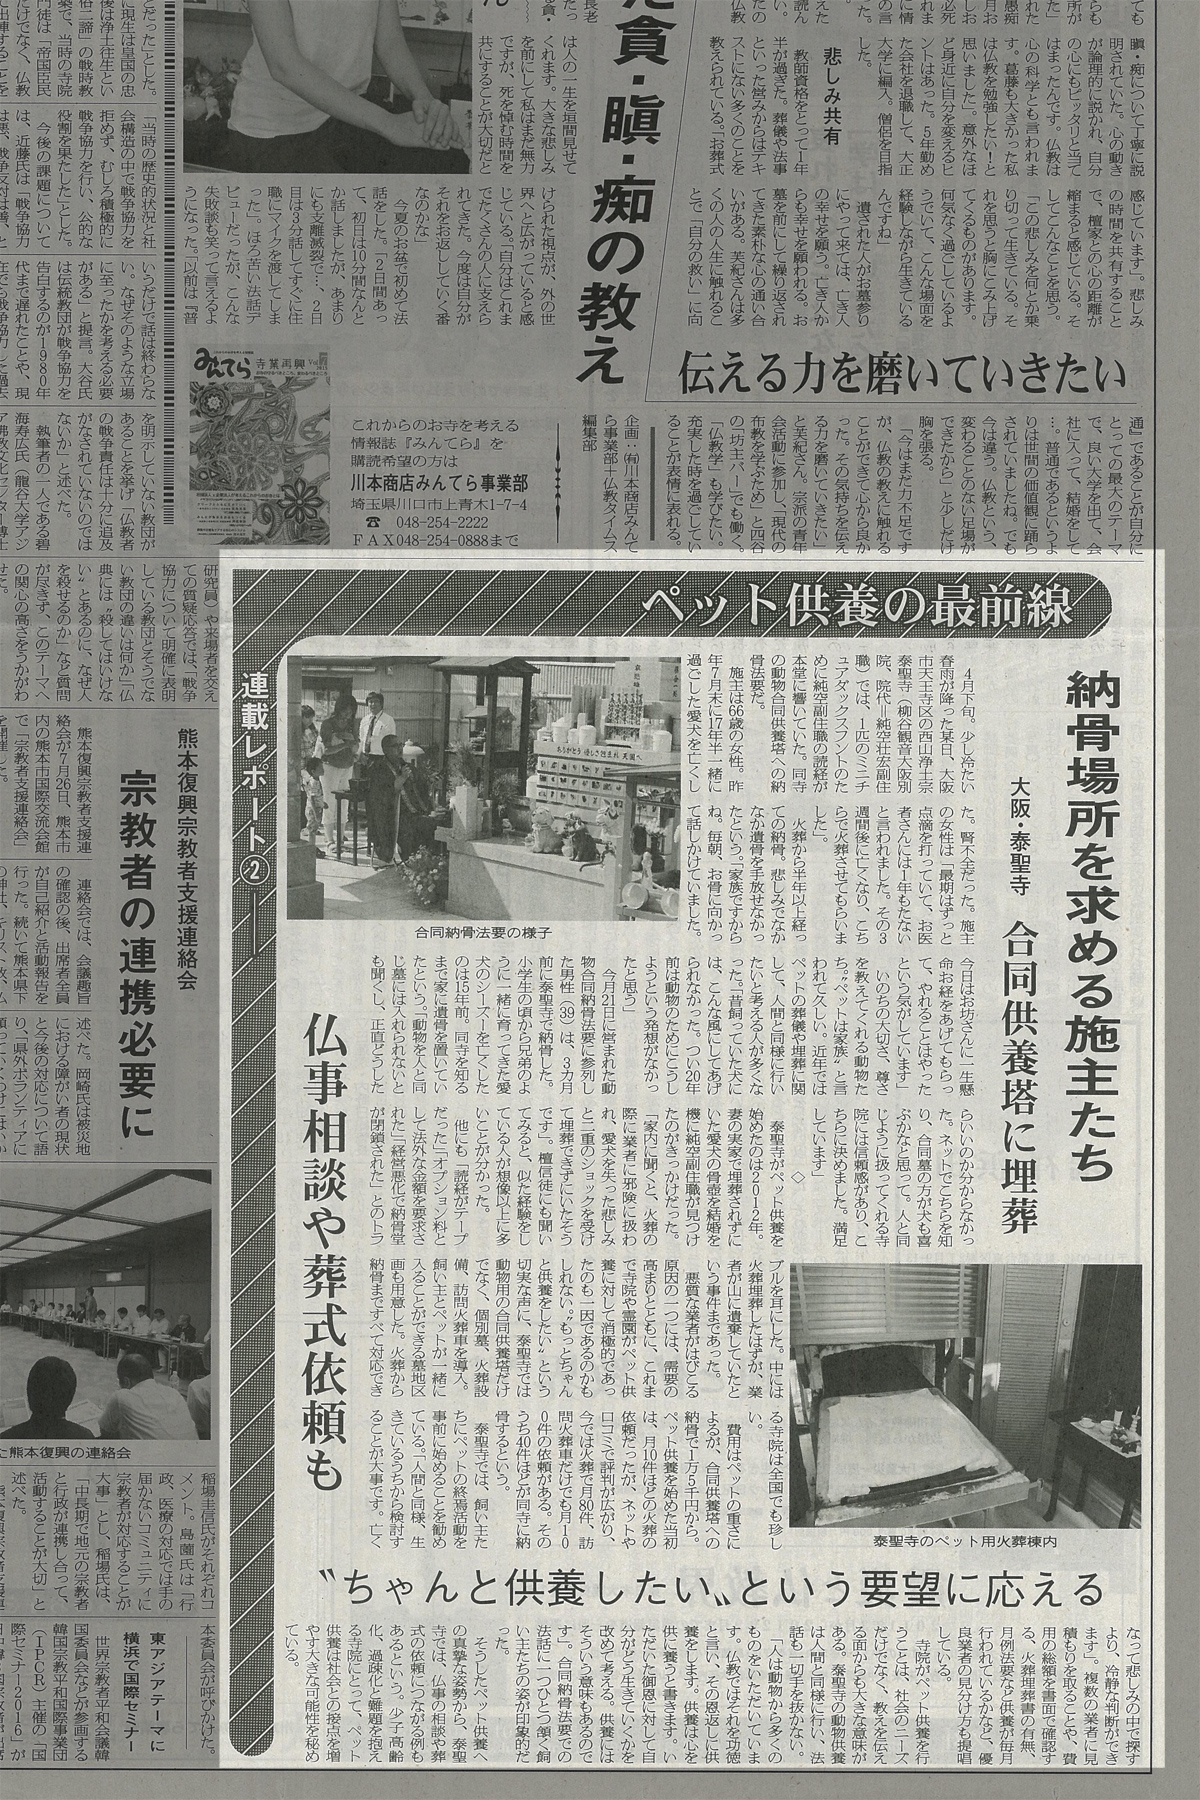 8月25日の『仏教タイムズ』にて
泰聖寺のペット納骨供養の取材が紙面に掲載されました。1